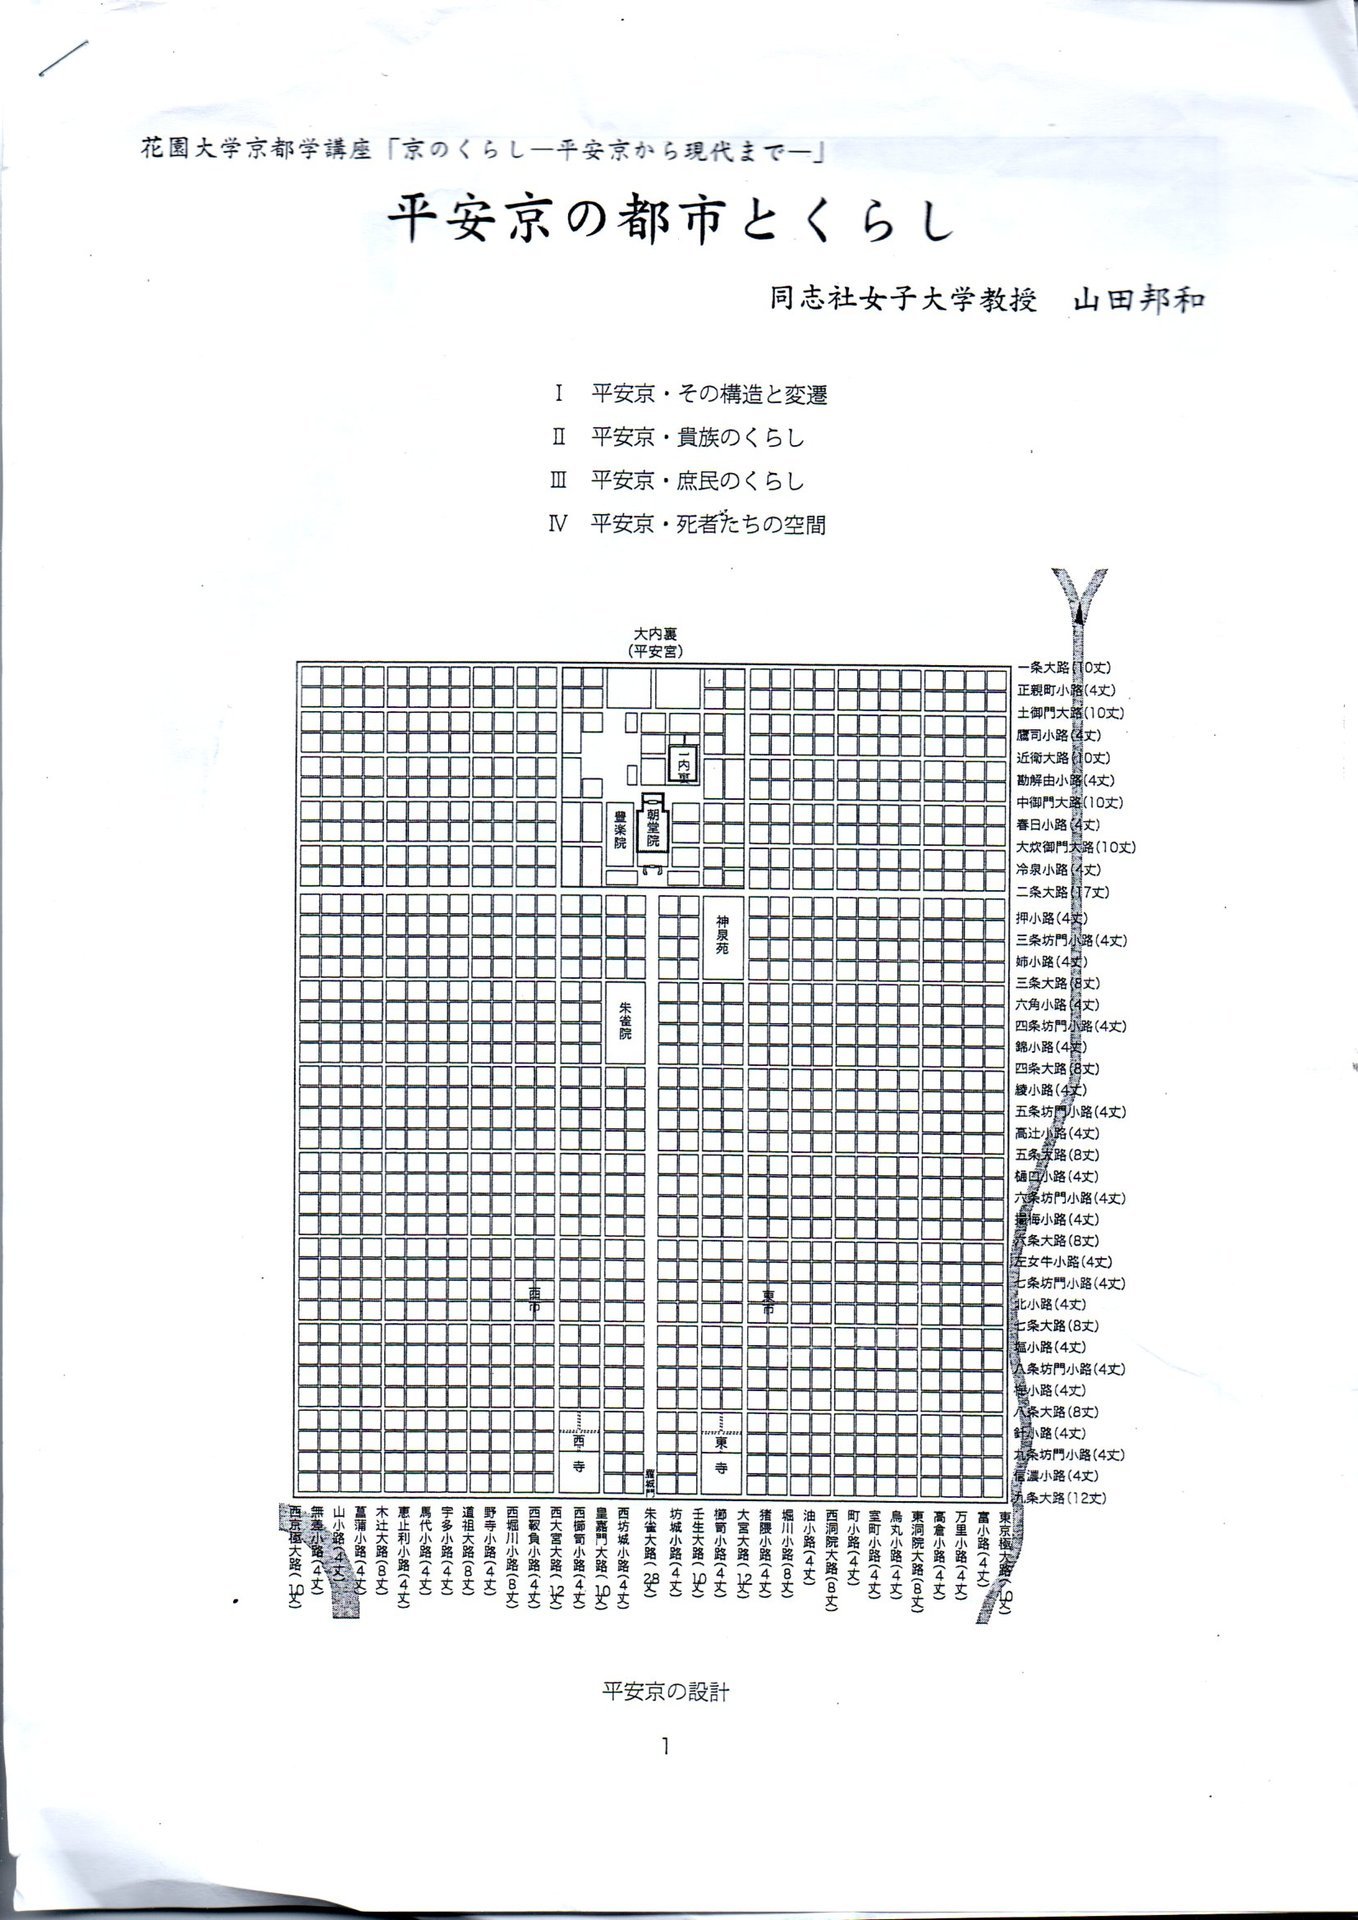 山田邦和氏の講演「平安京の都市とくらし」 平安京の全体図は完成せず